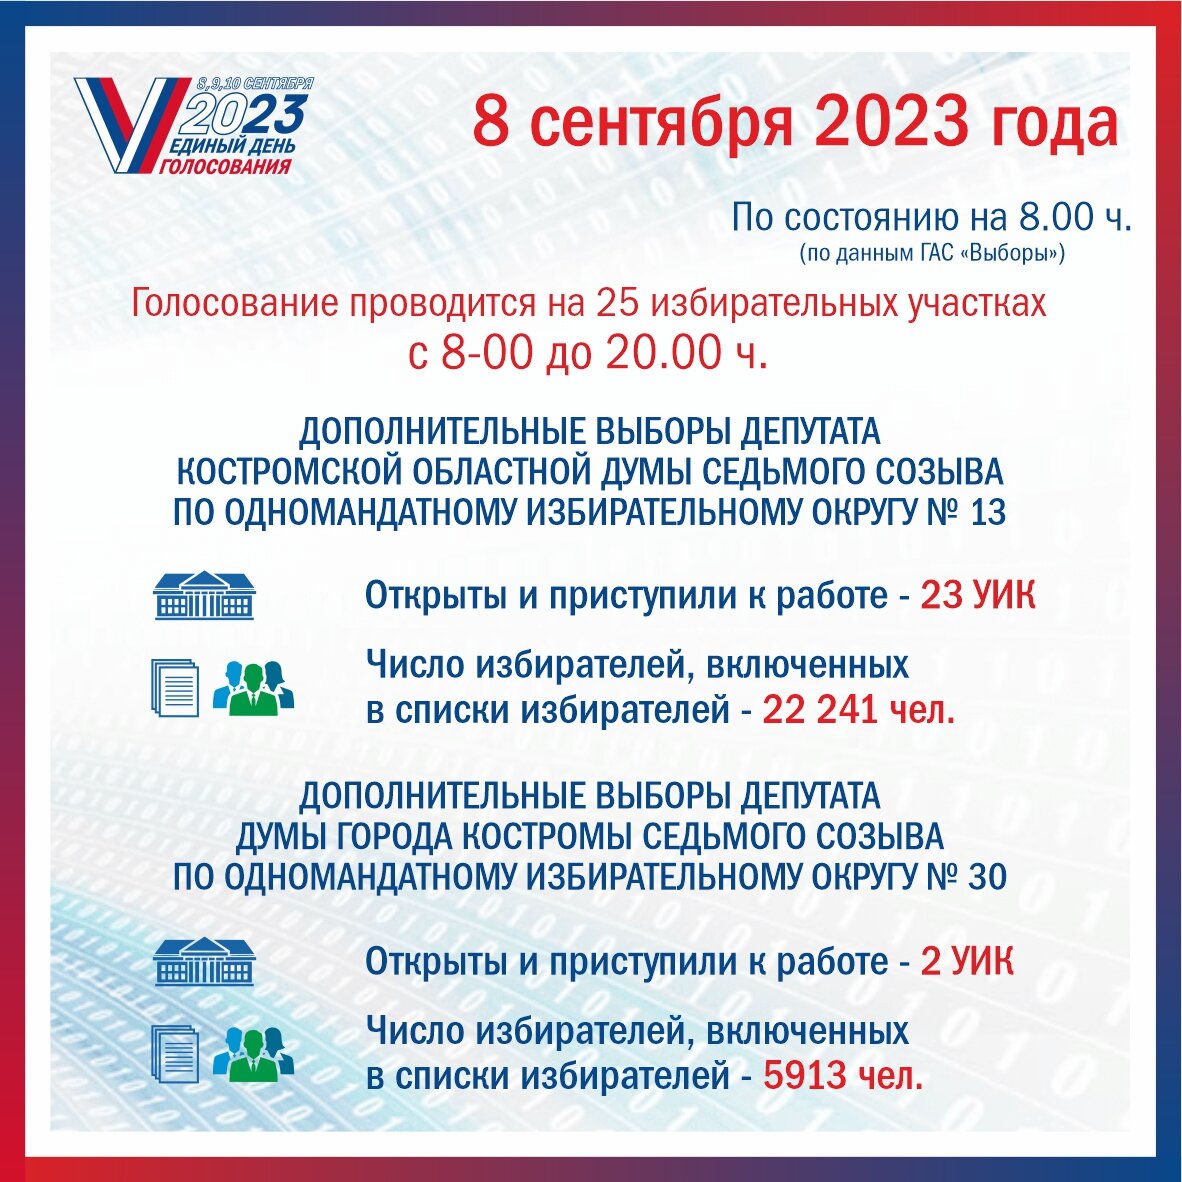 День голосования в 2023 году. Выборы 2023. Избирком Кострома. Региональные выборы 2023. Выборы Ульяновск 2023 в сентябре.